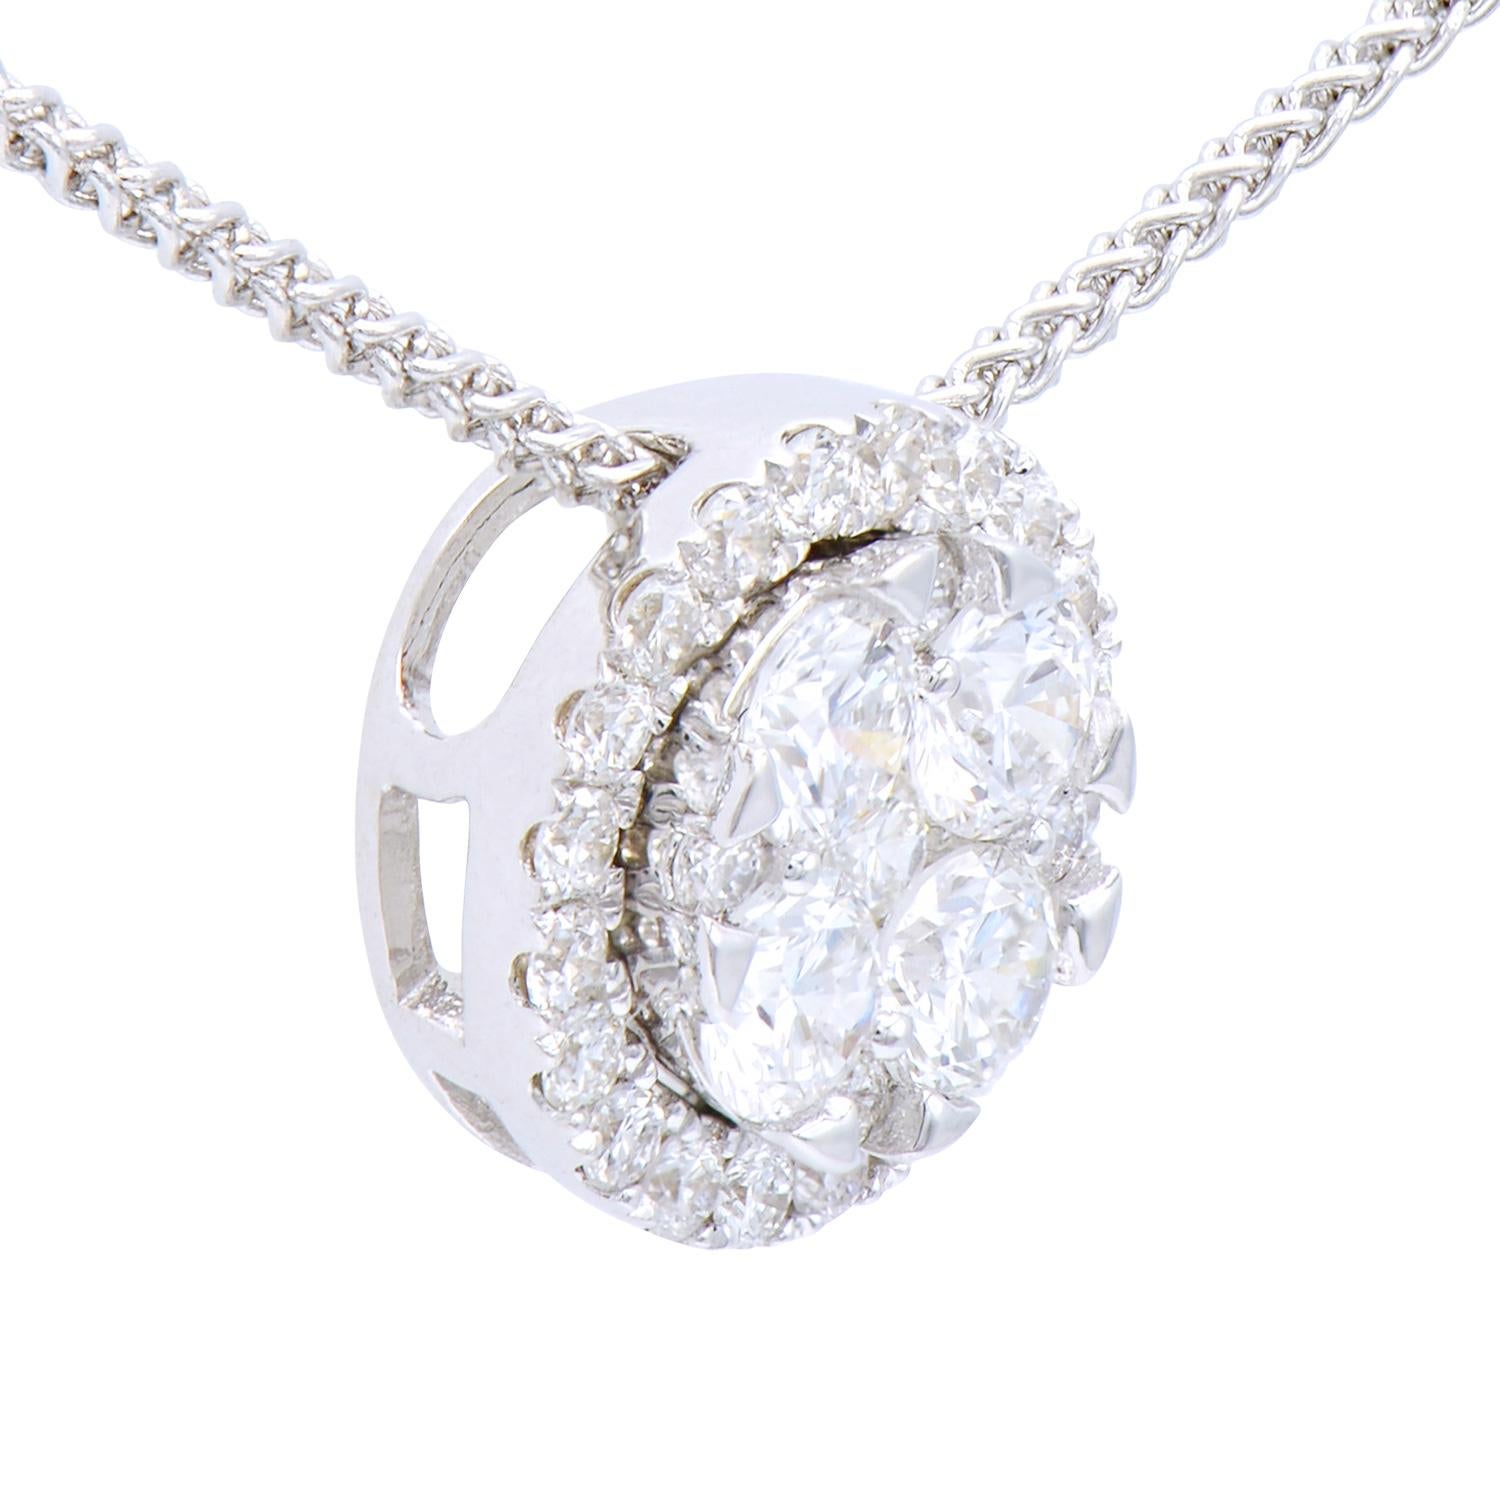 Ce magnifique pendentif circulaire est composé de 4 diamants de 0,35 carats entourés de 25 diamants ronds de 0,2 carats, tous de couleur VS2, G. Elles sont serties dans 1,0 gramme d'or blanc 18 carats avec une chaîne 18 carats également. Ce look